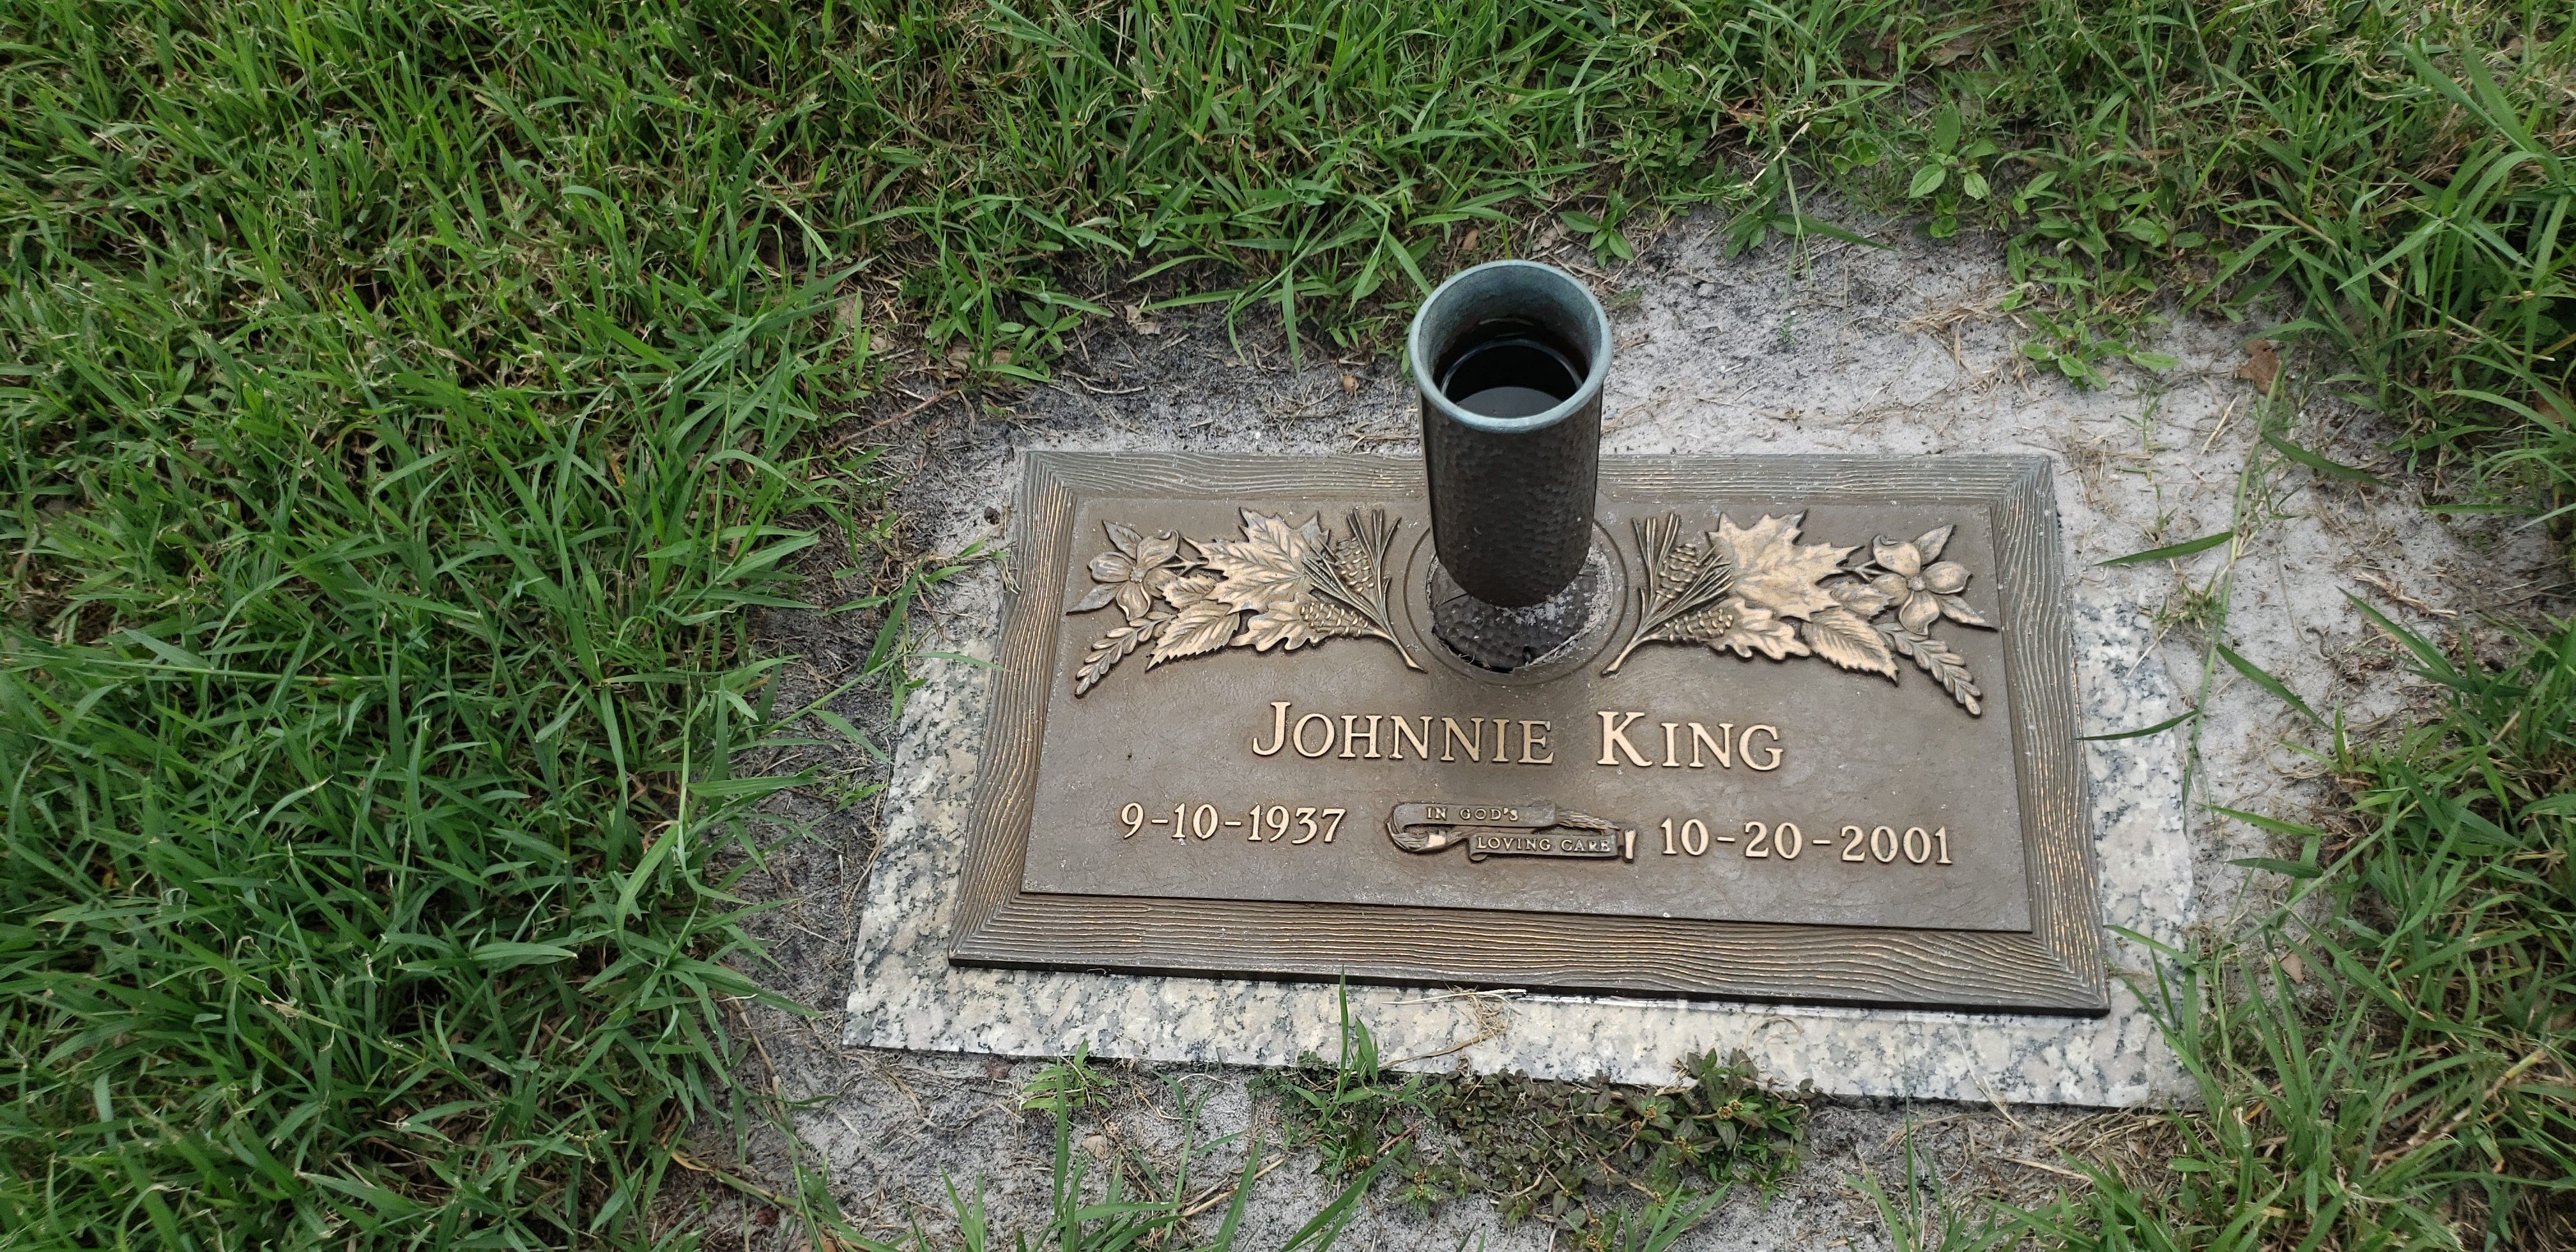 Johnnie King